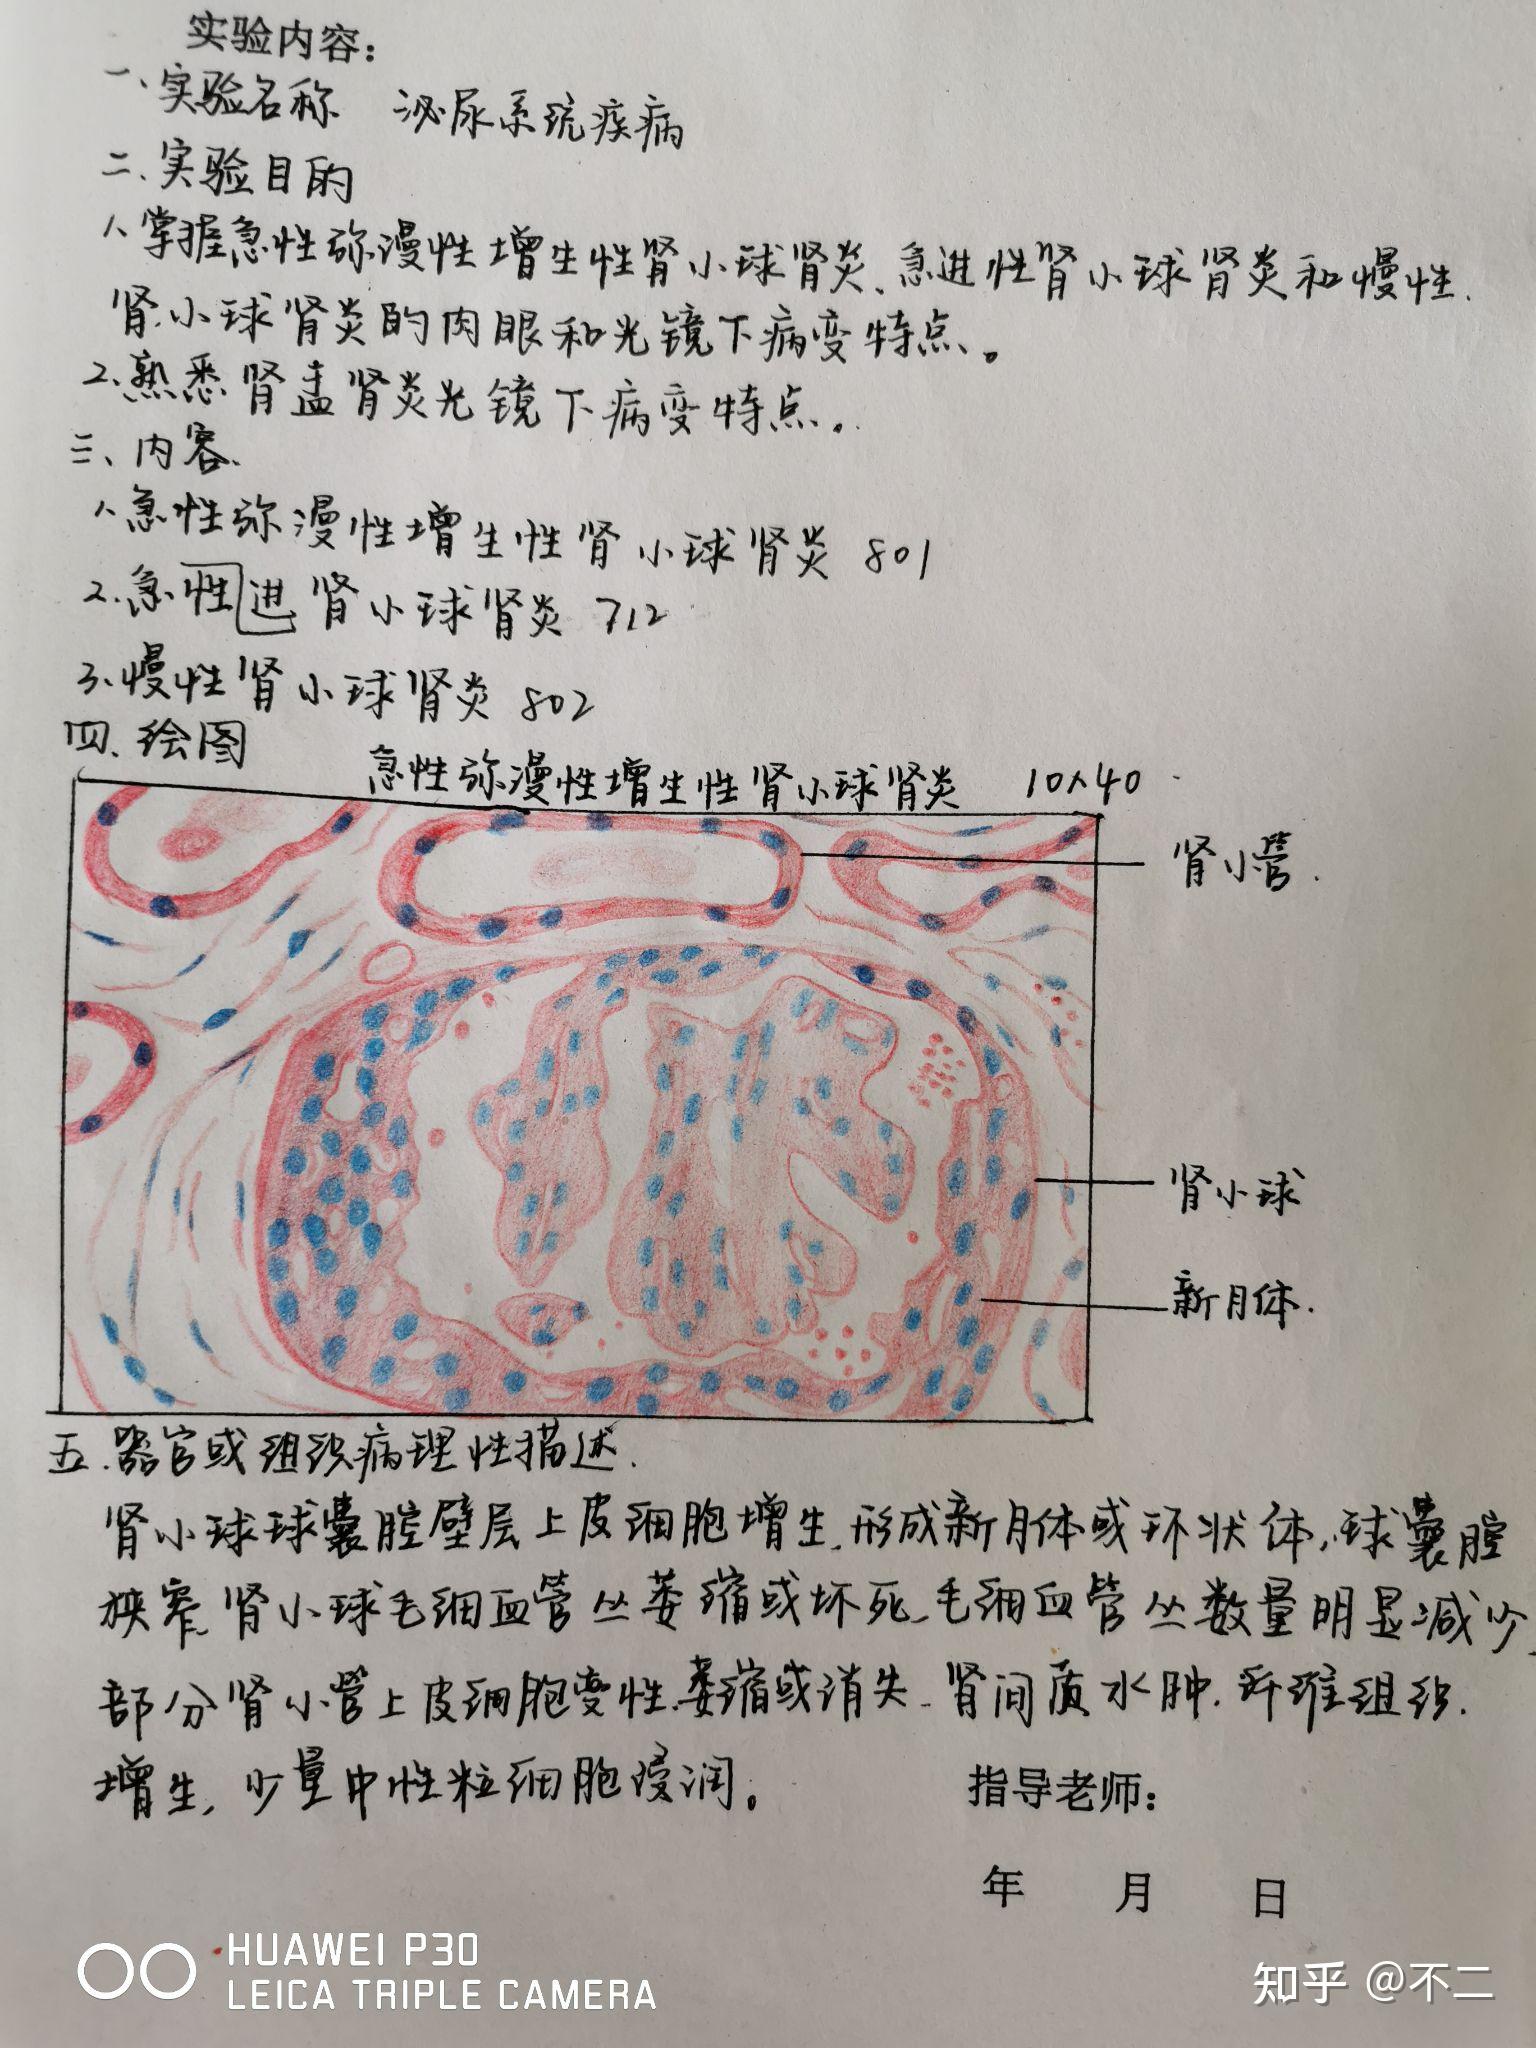 肾组胚红蓝铅笔绘图图片